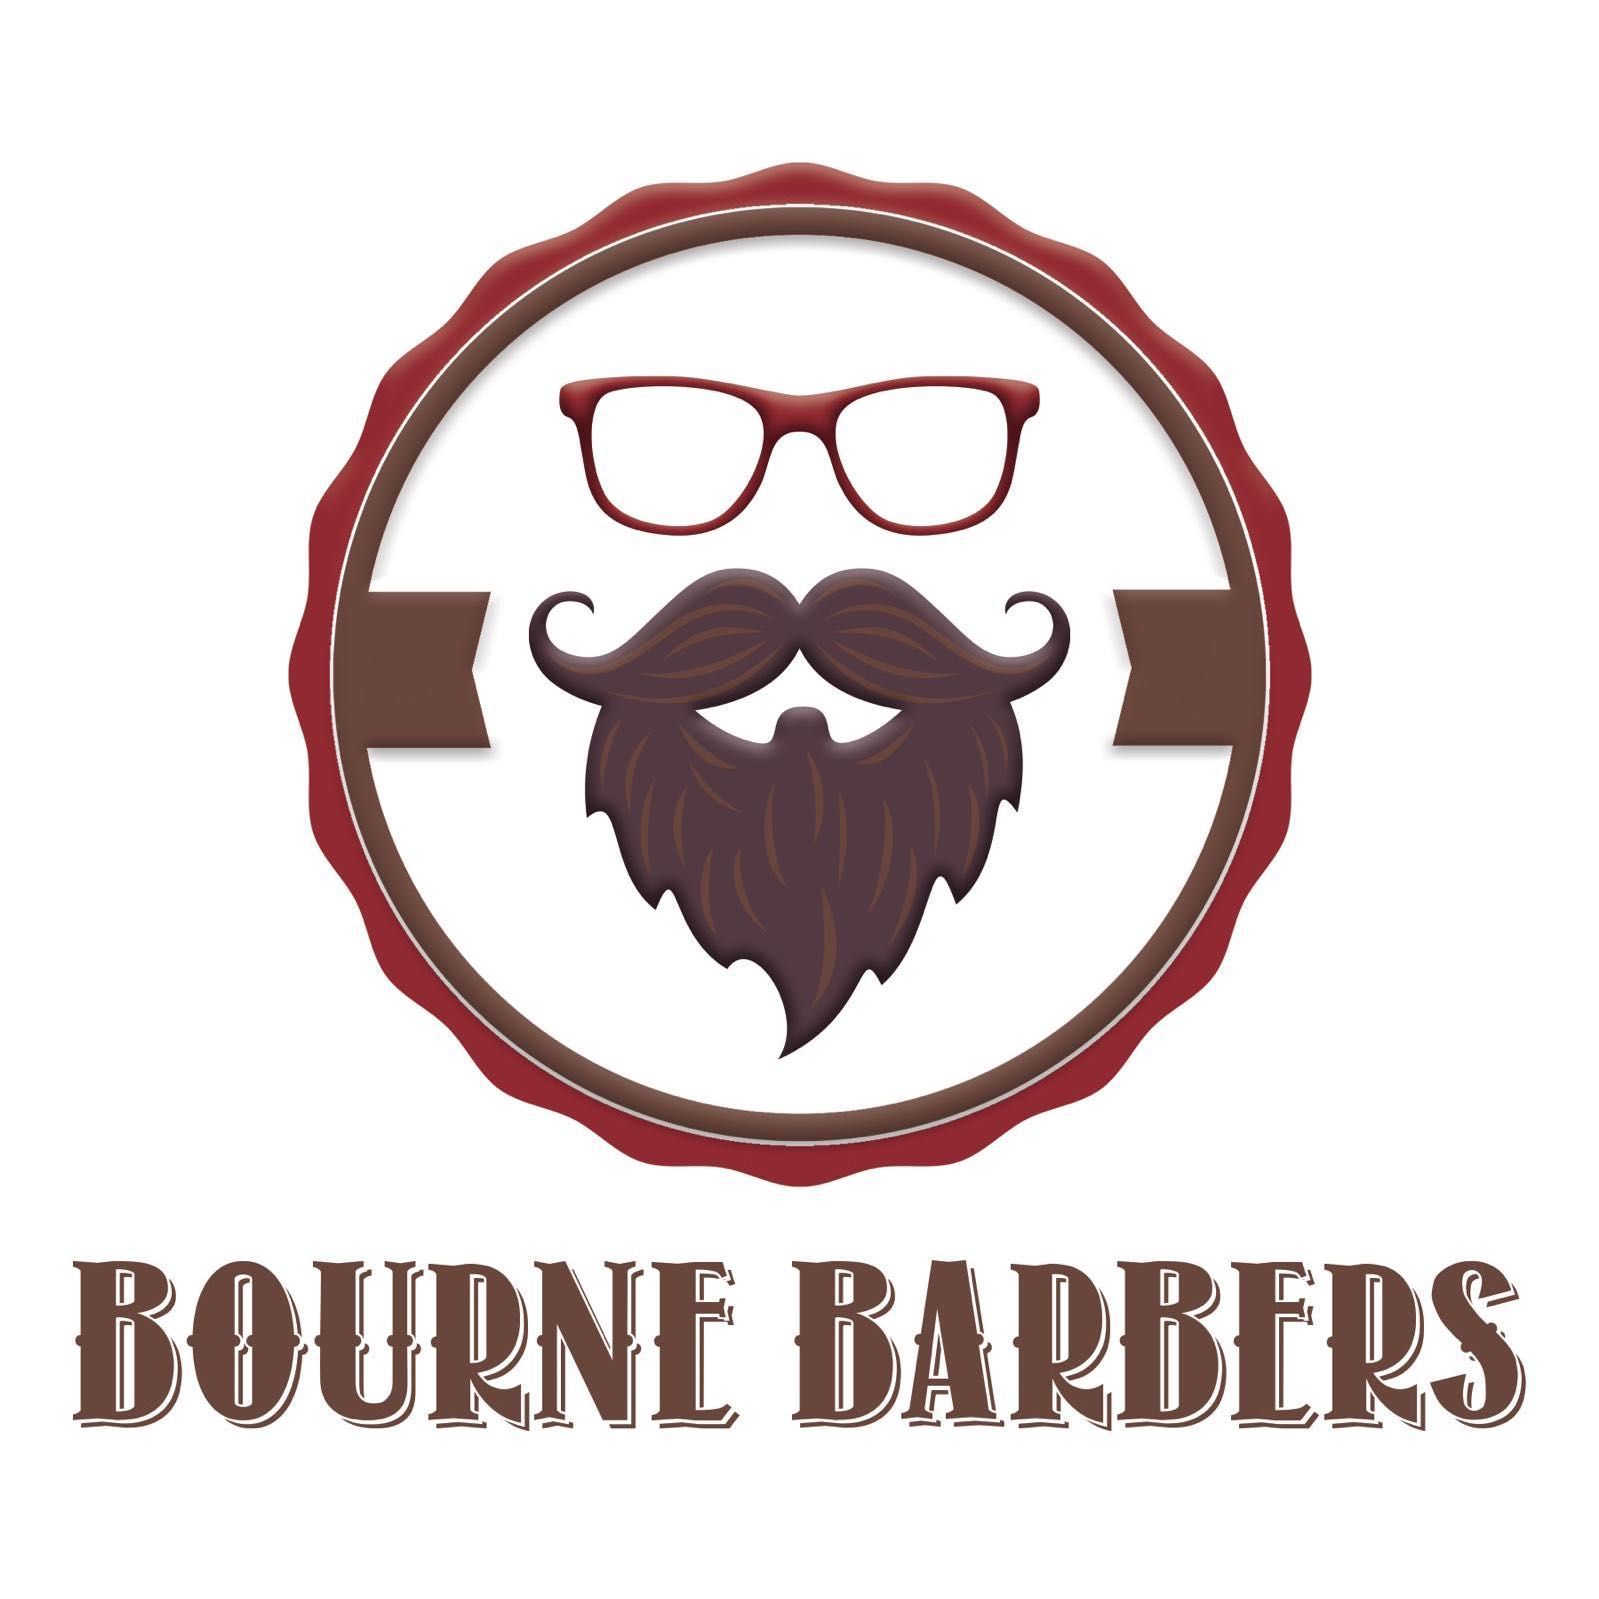 Bourne Barbers, 82 Firle Road, BN22 8EG, Eastbourne